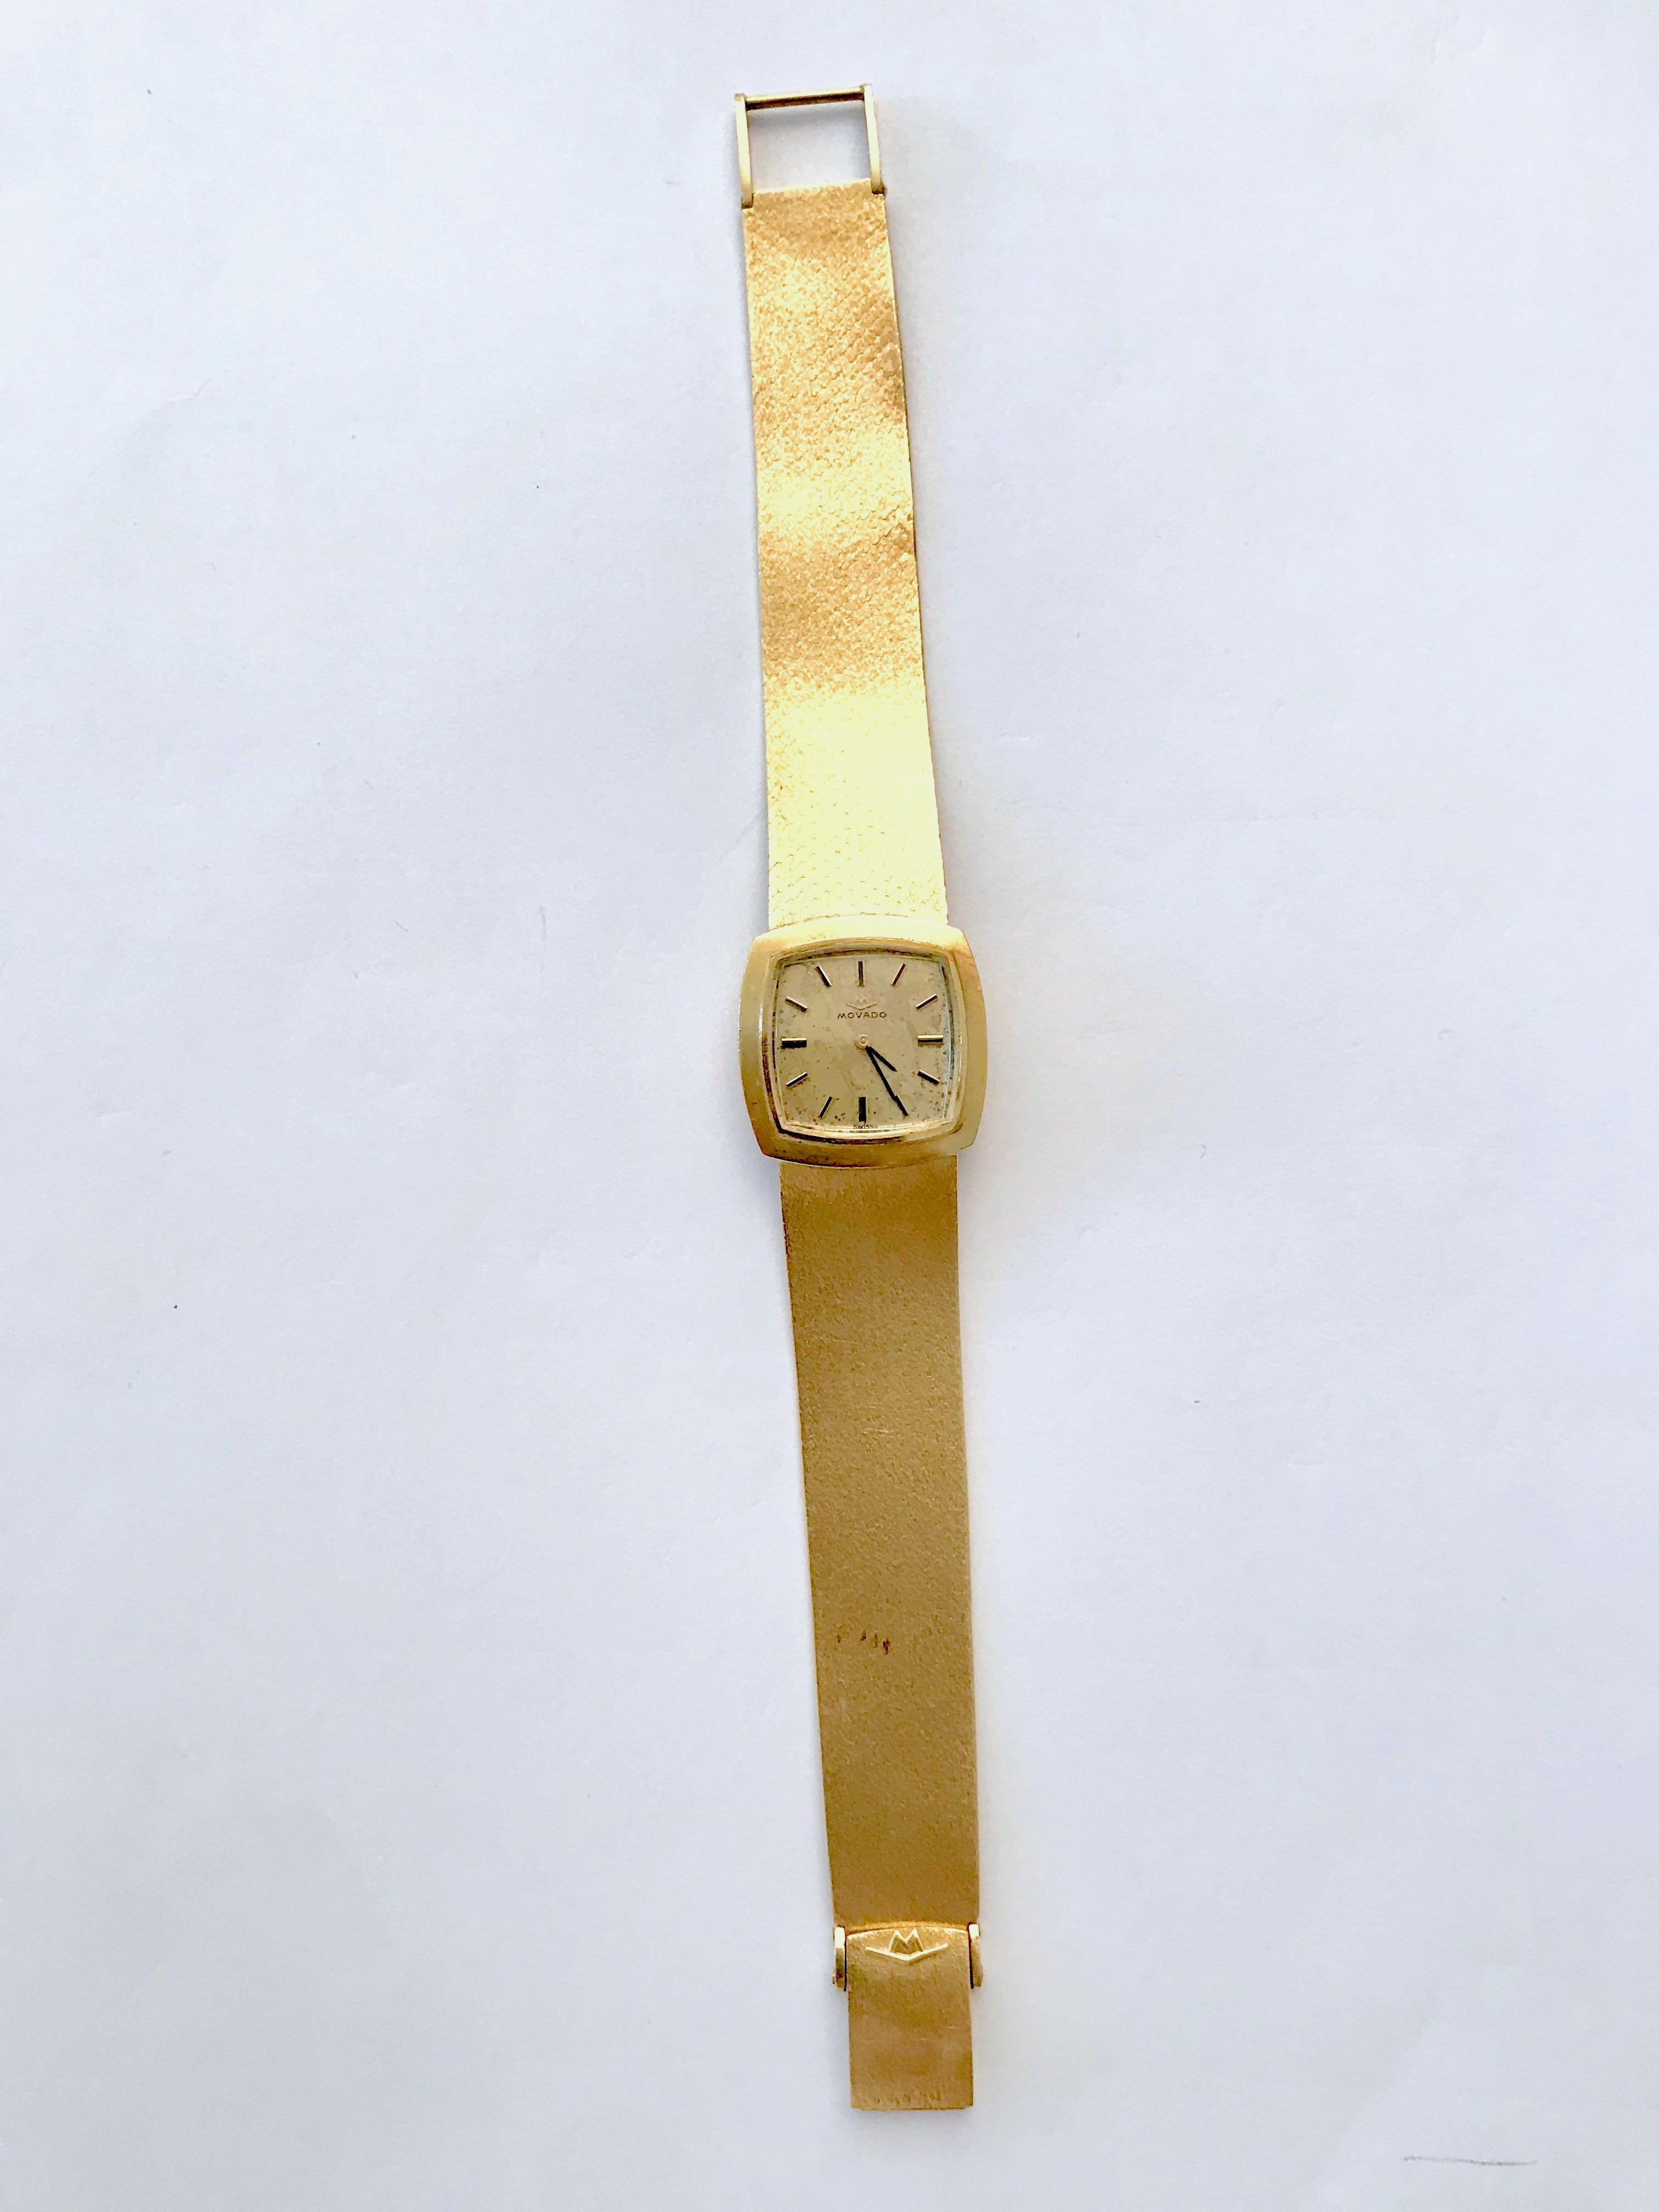 MOVADO Mechanische Damenuhr der Marke Movado aus 18 Karat Gelbgold um 1960
Originelles Bandarmband aus 18k satiniertem Gelbgold. Ursprünglicher Mechanismus. Die Uhr ist in funktionstüchtigem Zustand. 
Die Unterseite des Zifferblatts ist